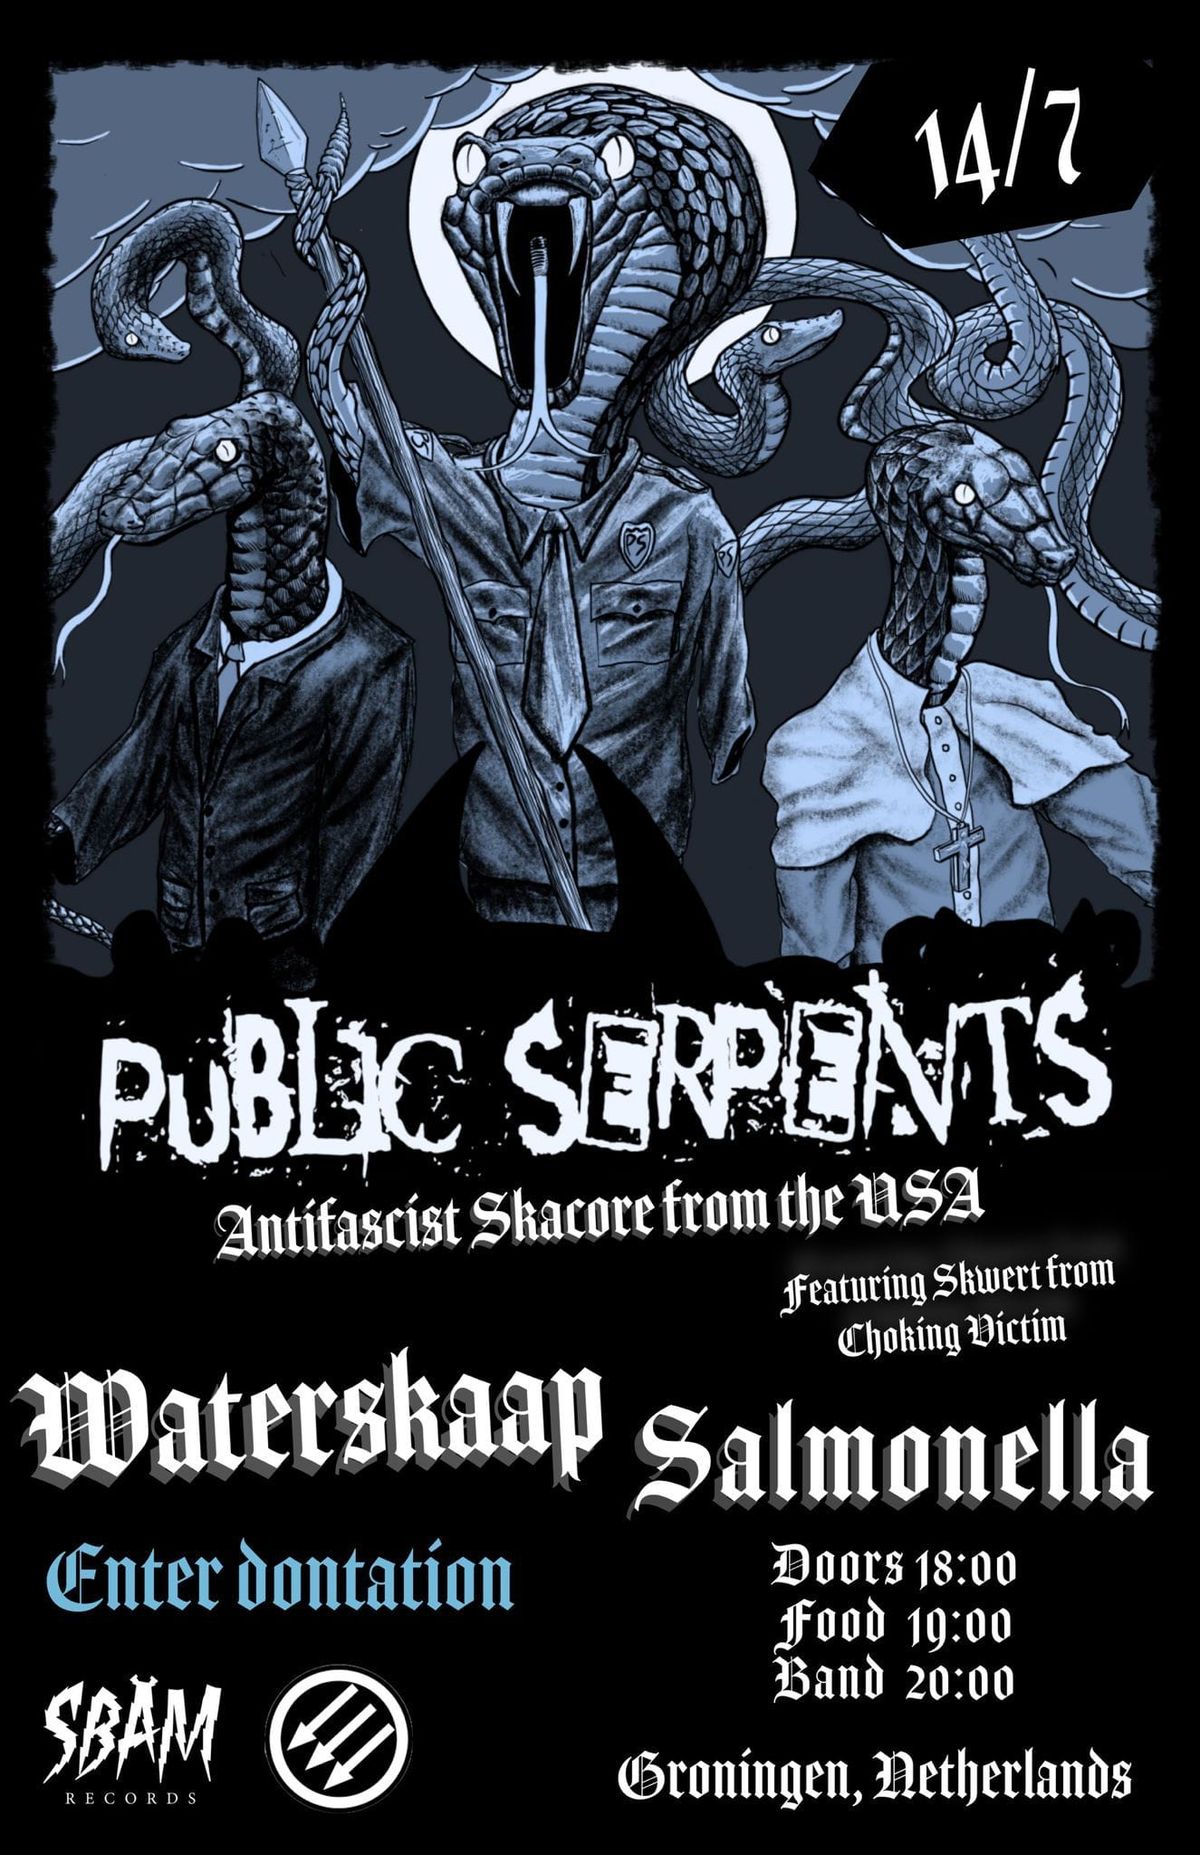 \ud83c\udf5c Salmonella VoKu with Public Serpents (USA)